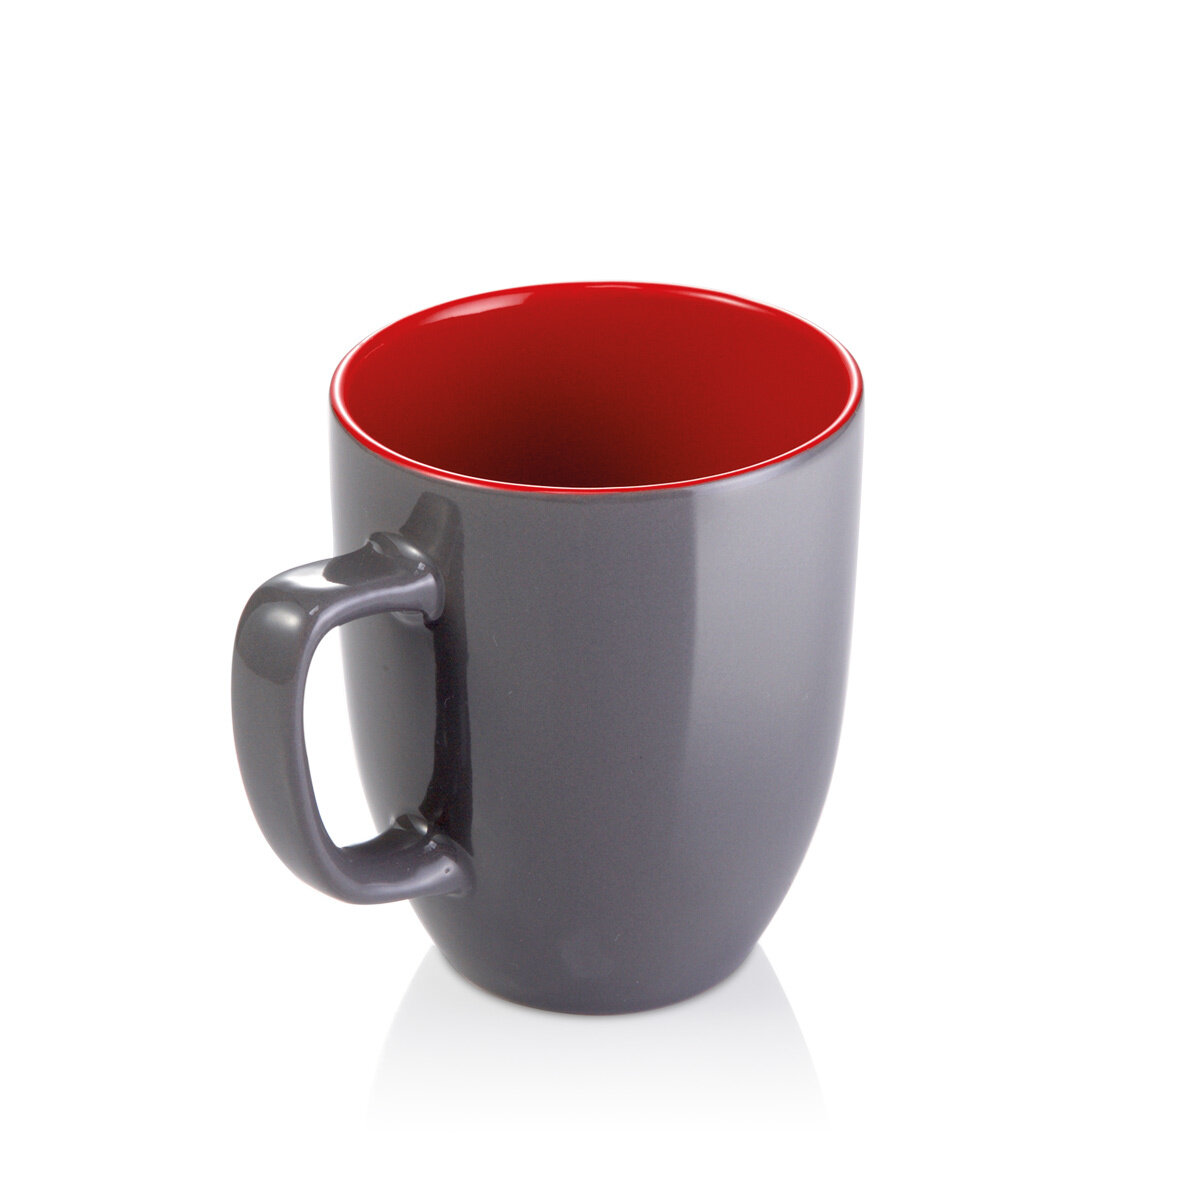 Кружка для чая чашка для кофе для горячих напитков Tescoma Crema Shine 290 мл